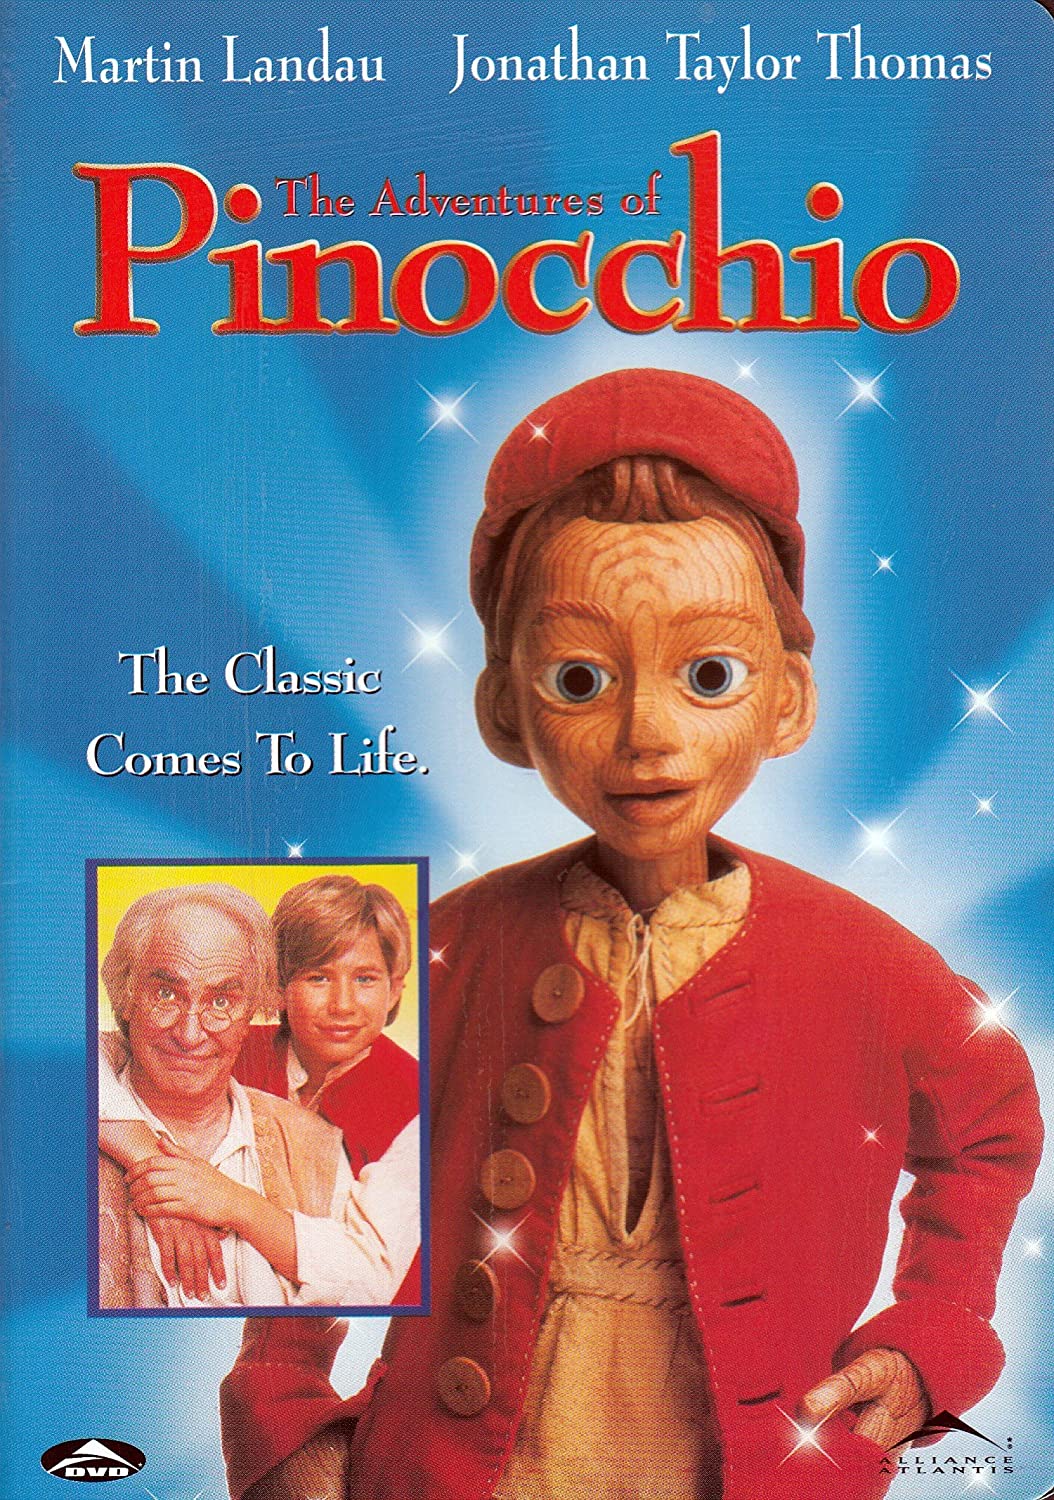 ดูหนังออนไลน์ฟรี The Adventures of Pinocchio (1996) หนังเต็มเรื่อง หนังมาสเตอร์ ดูหนังHD ดูหนังออนไลน์ ดูหนังใหม่